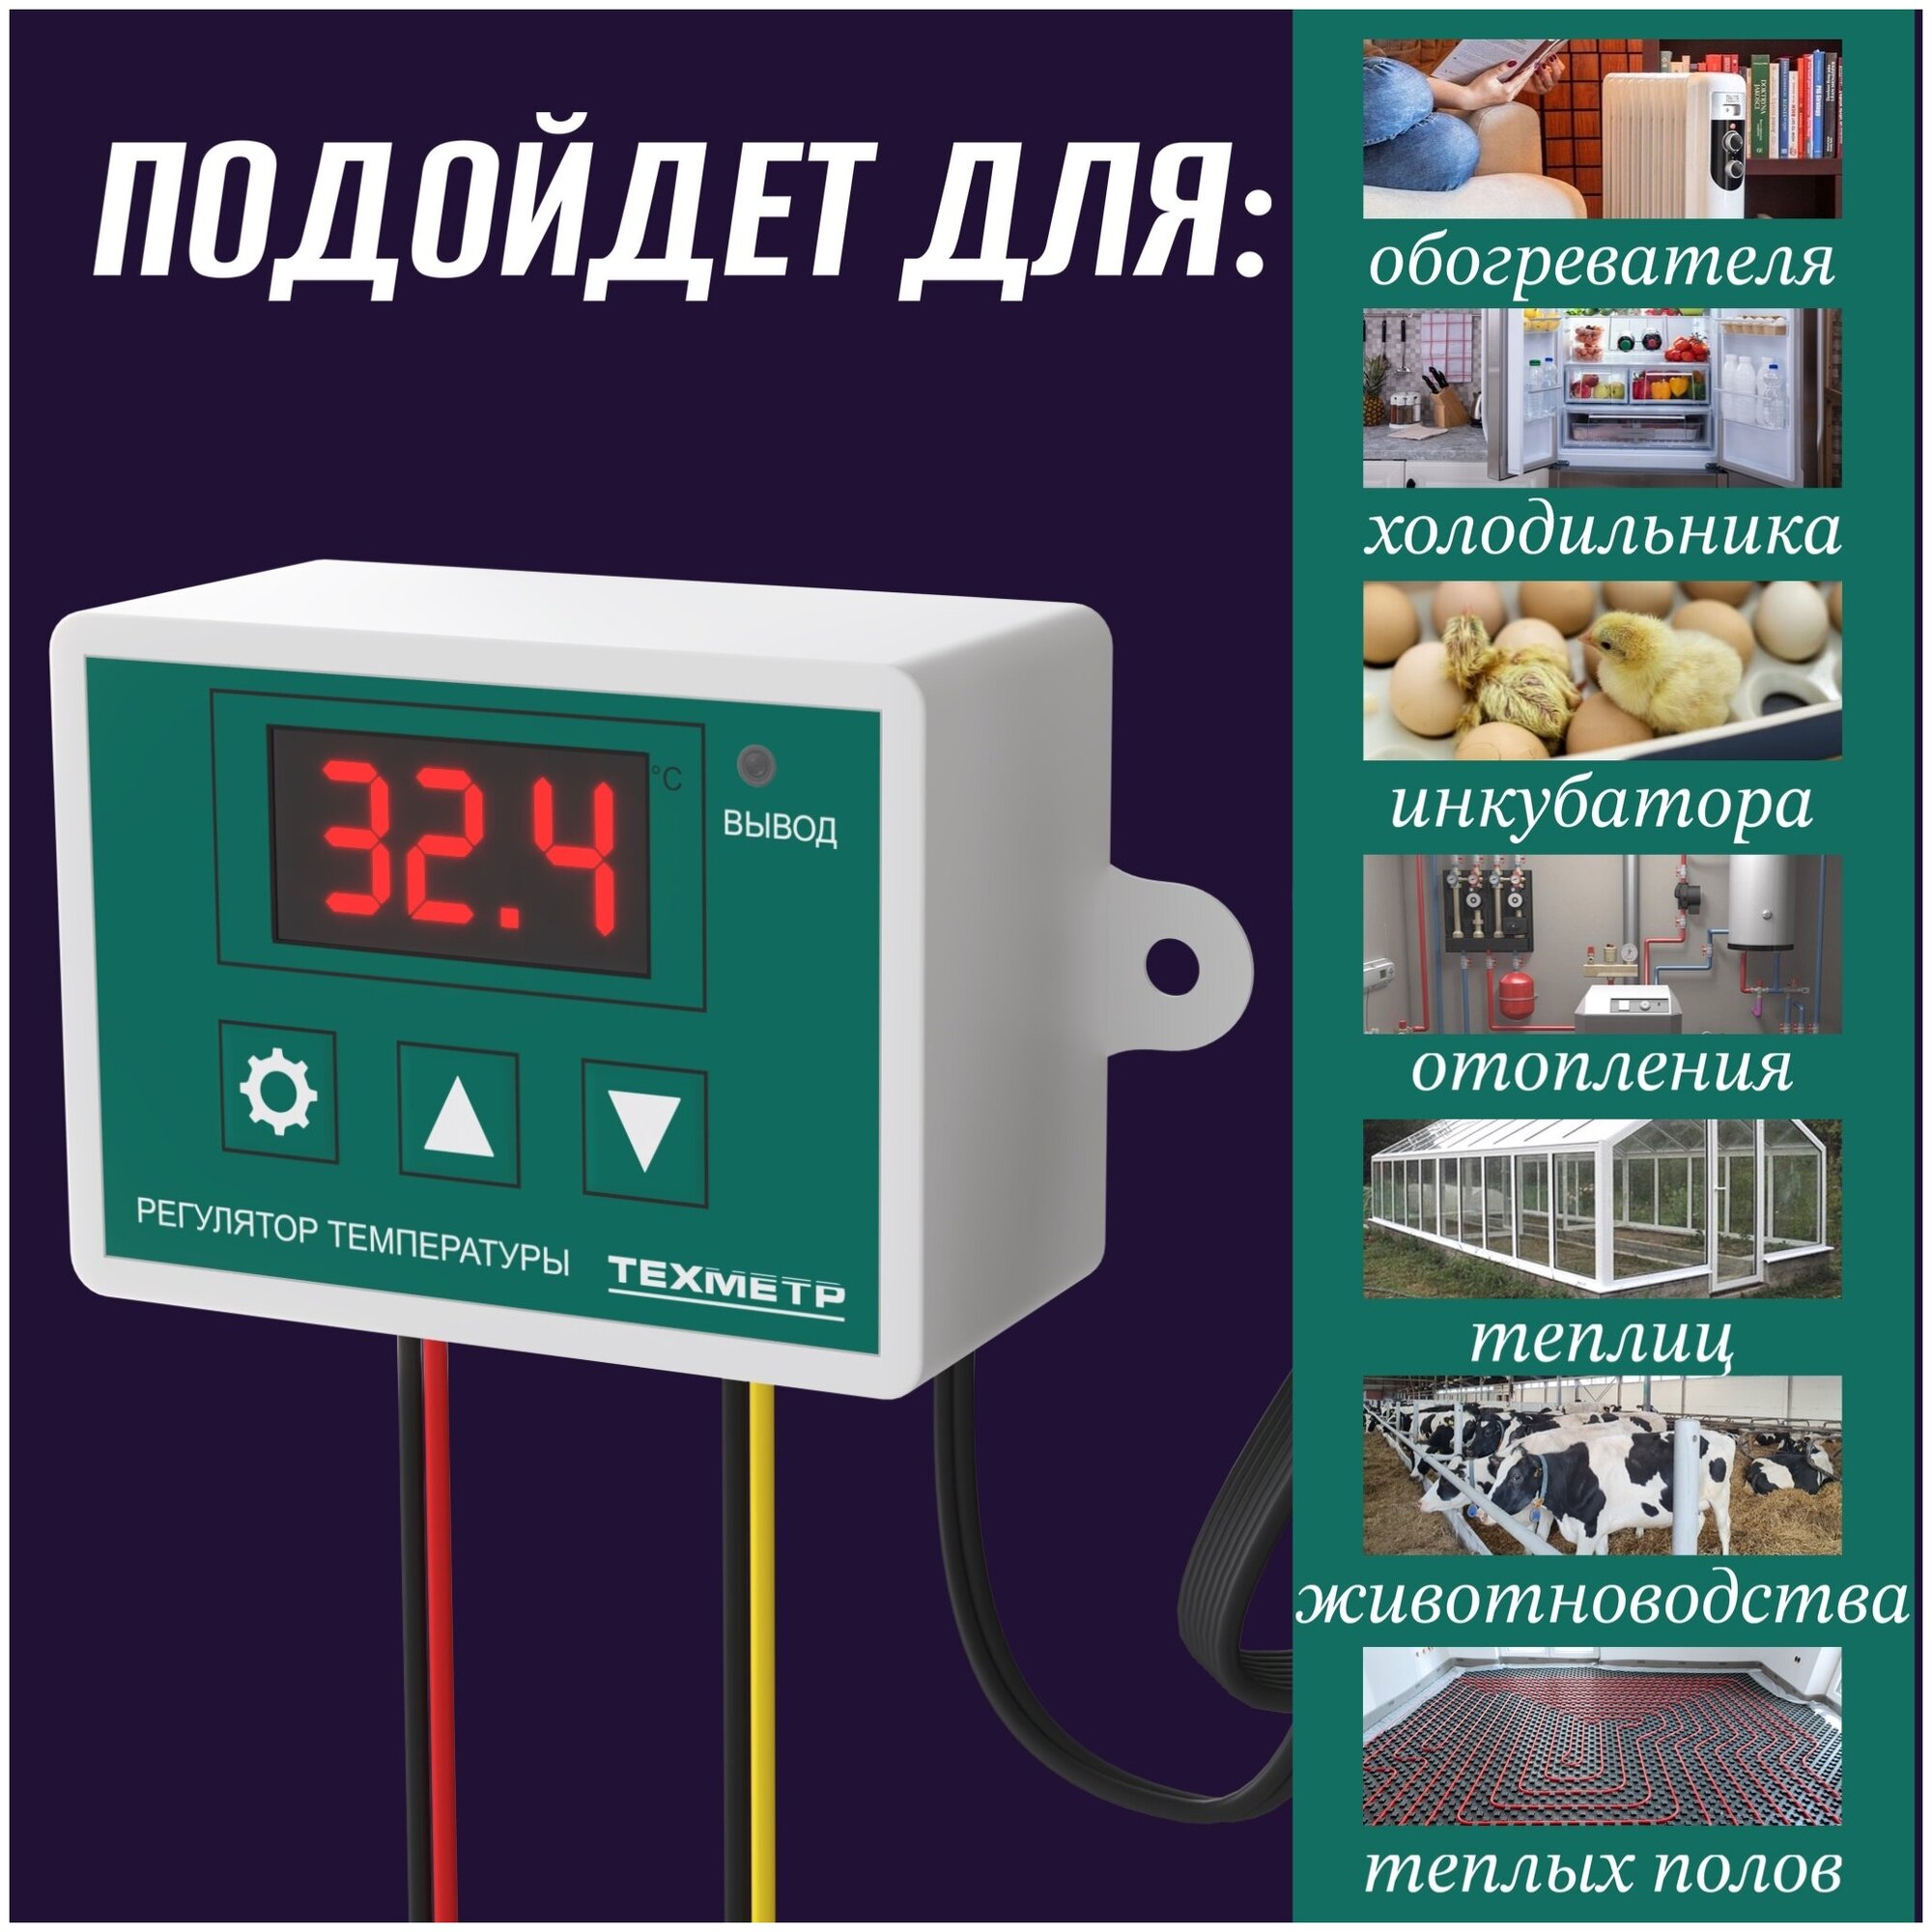 Терморегулятор термостат контроллер температуры для холодильника, инкубатора, брудера, отопления, теплого пола 220В 1500Вт техметр XH-W3002 (Зелёный) - фотография № 4